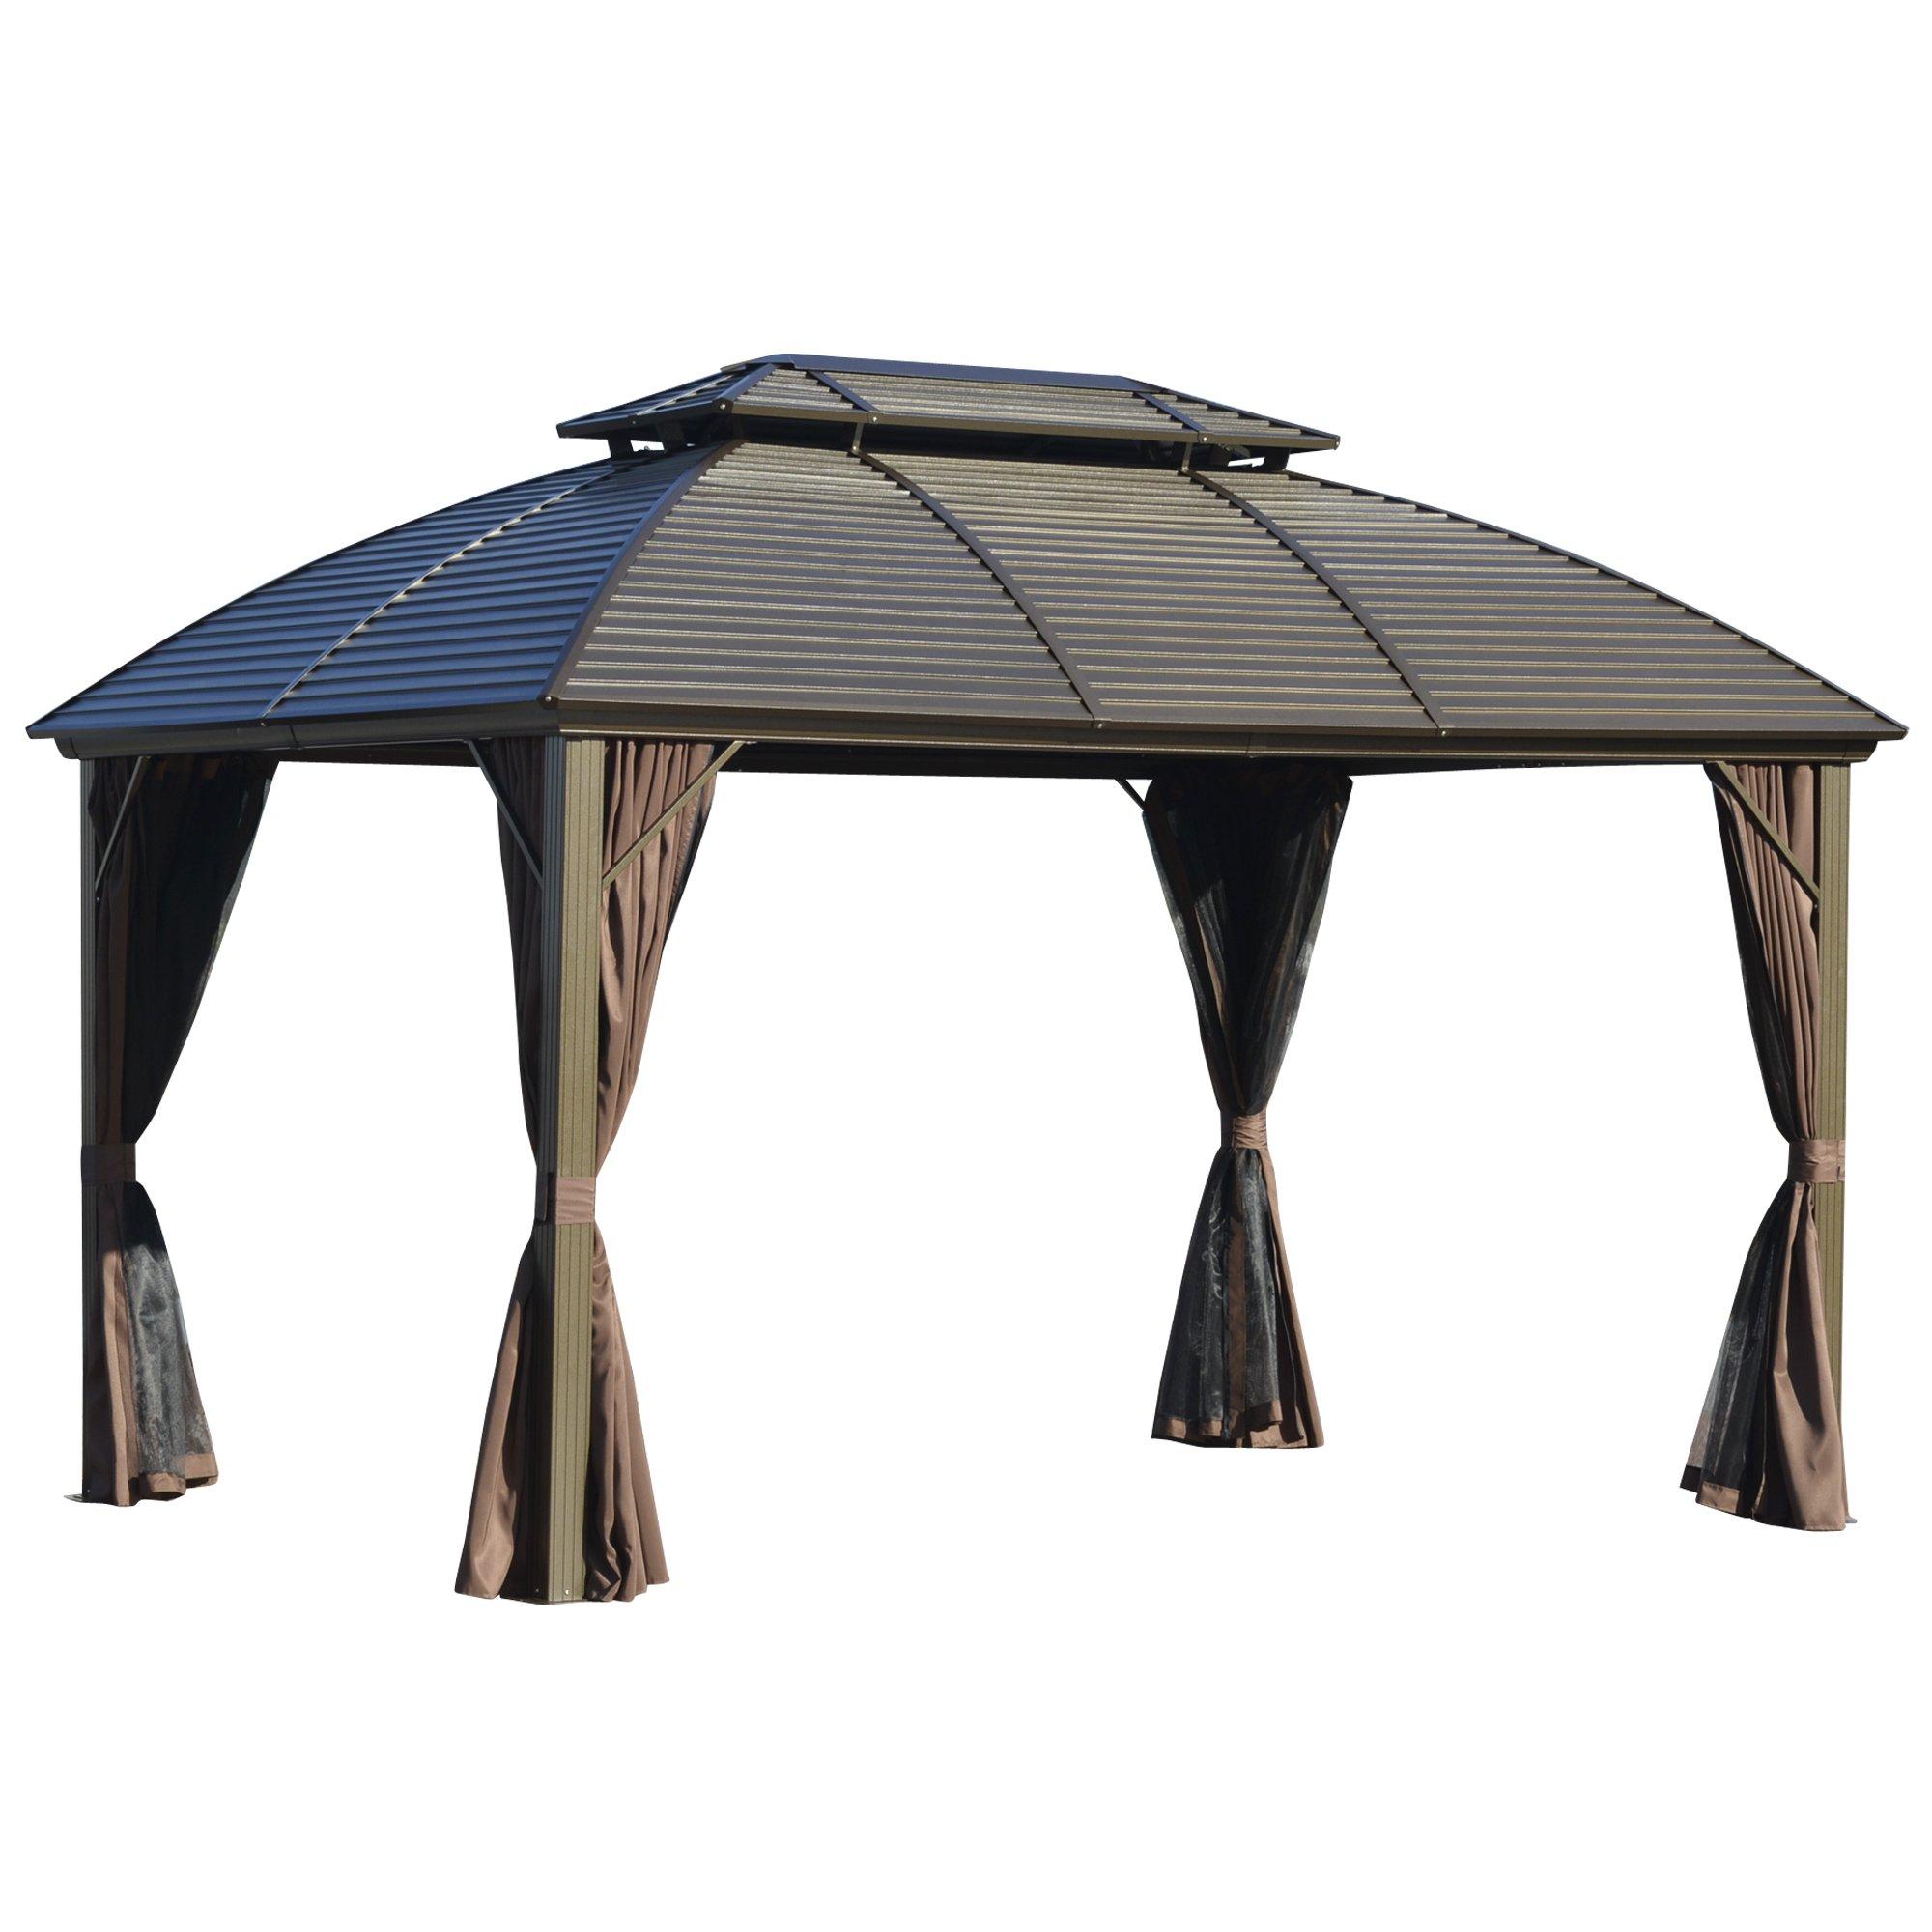 3.65 x 3(m) Aluminum Outdoor Gazebowith Hardtop Double Roof Sidewalls